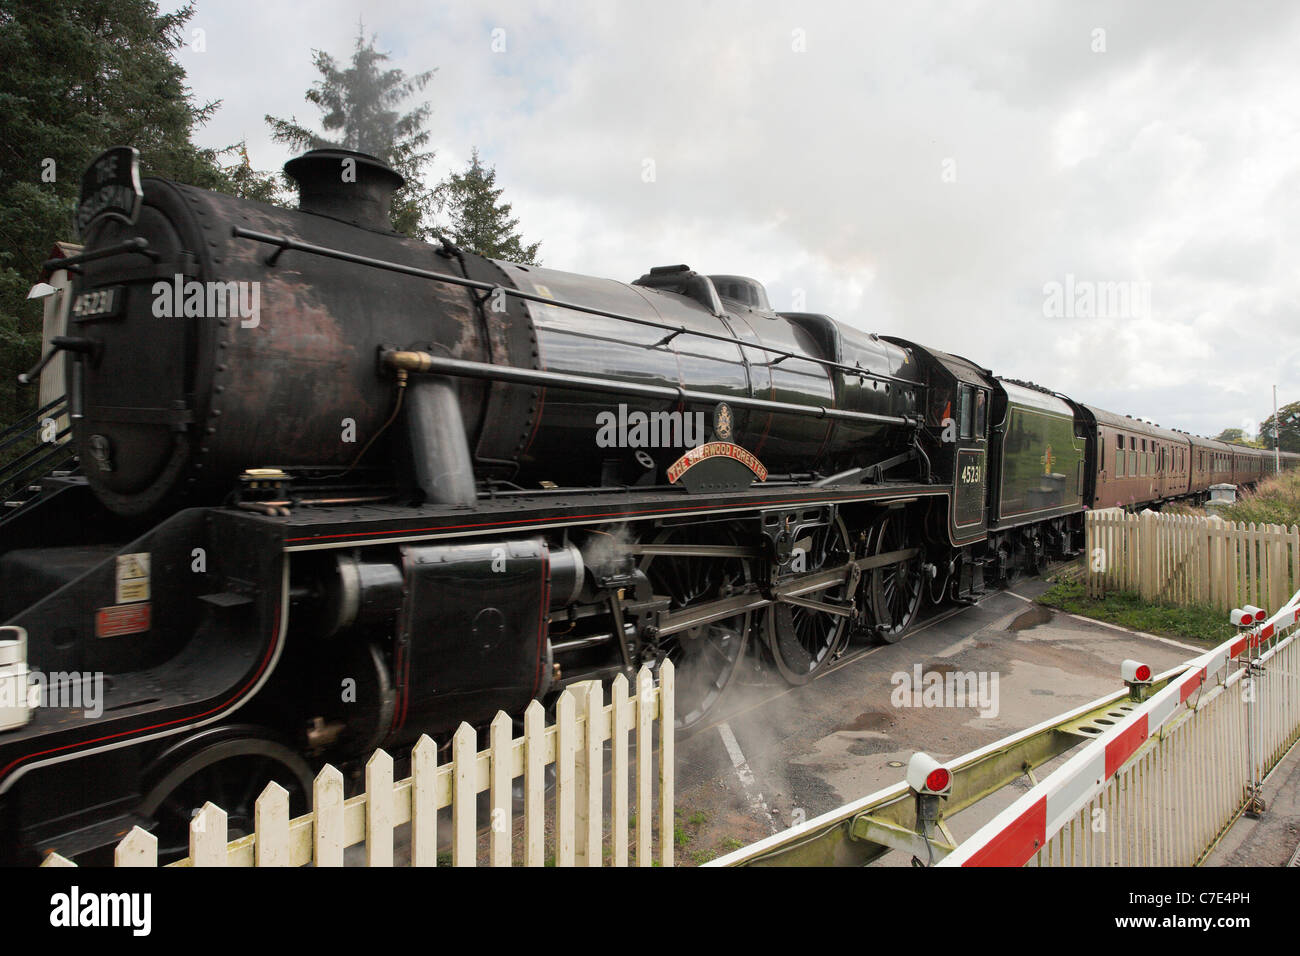 Fellsman treno a vapore a bassa casa attraversando, Armathwaite, accontentarsi di Carlisle ferrovia all'Eden Valley, Cumbria, England, Regno Unito Foto Stock